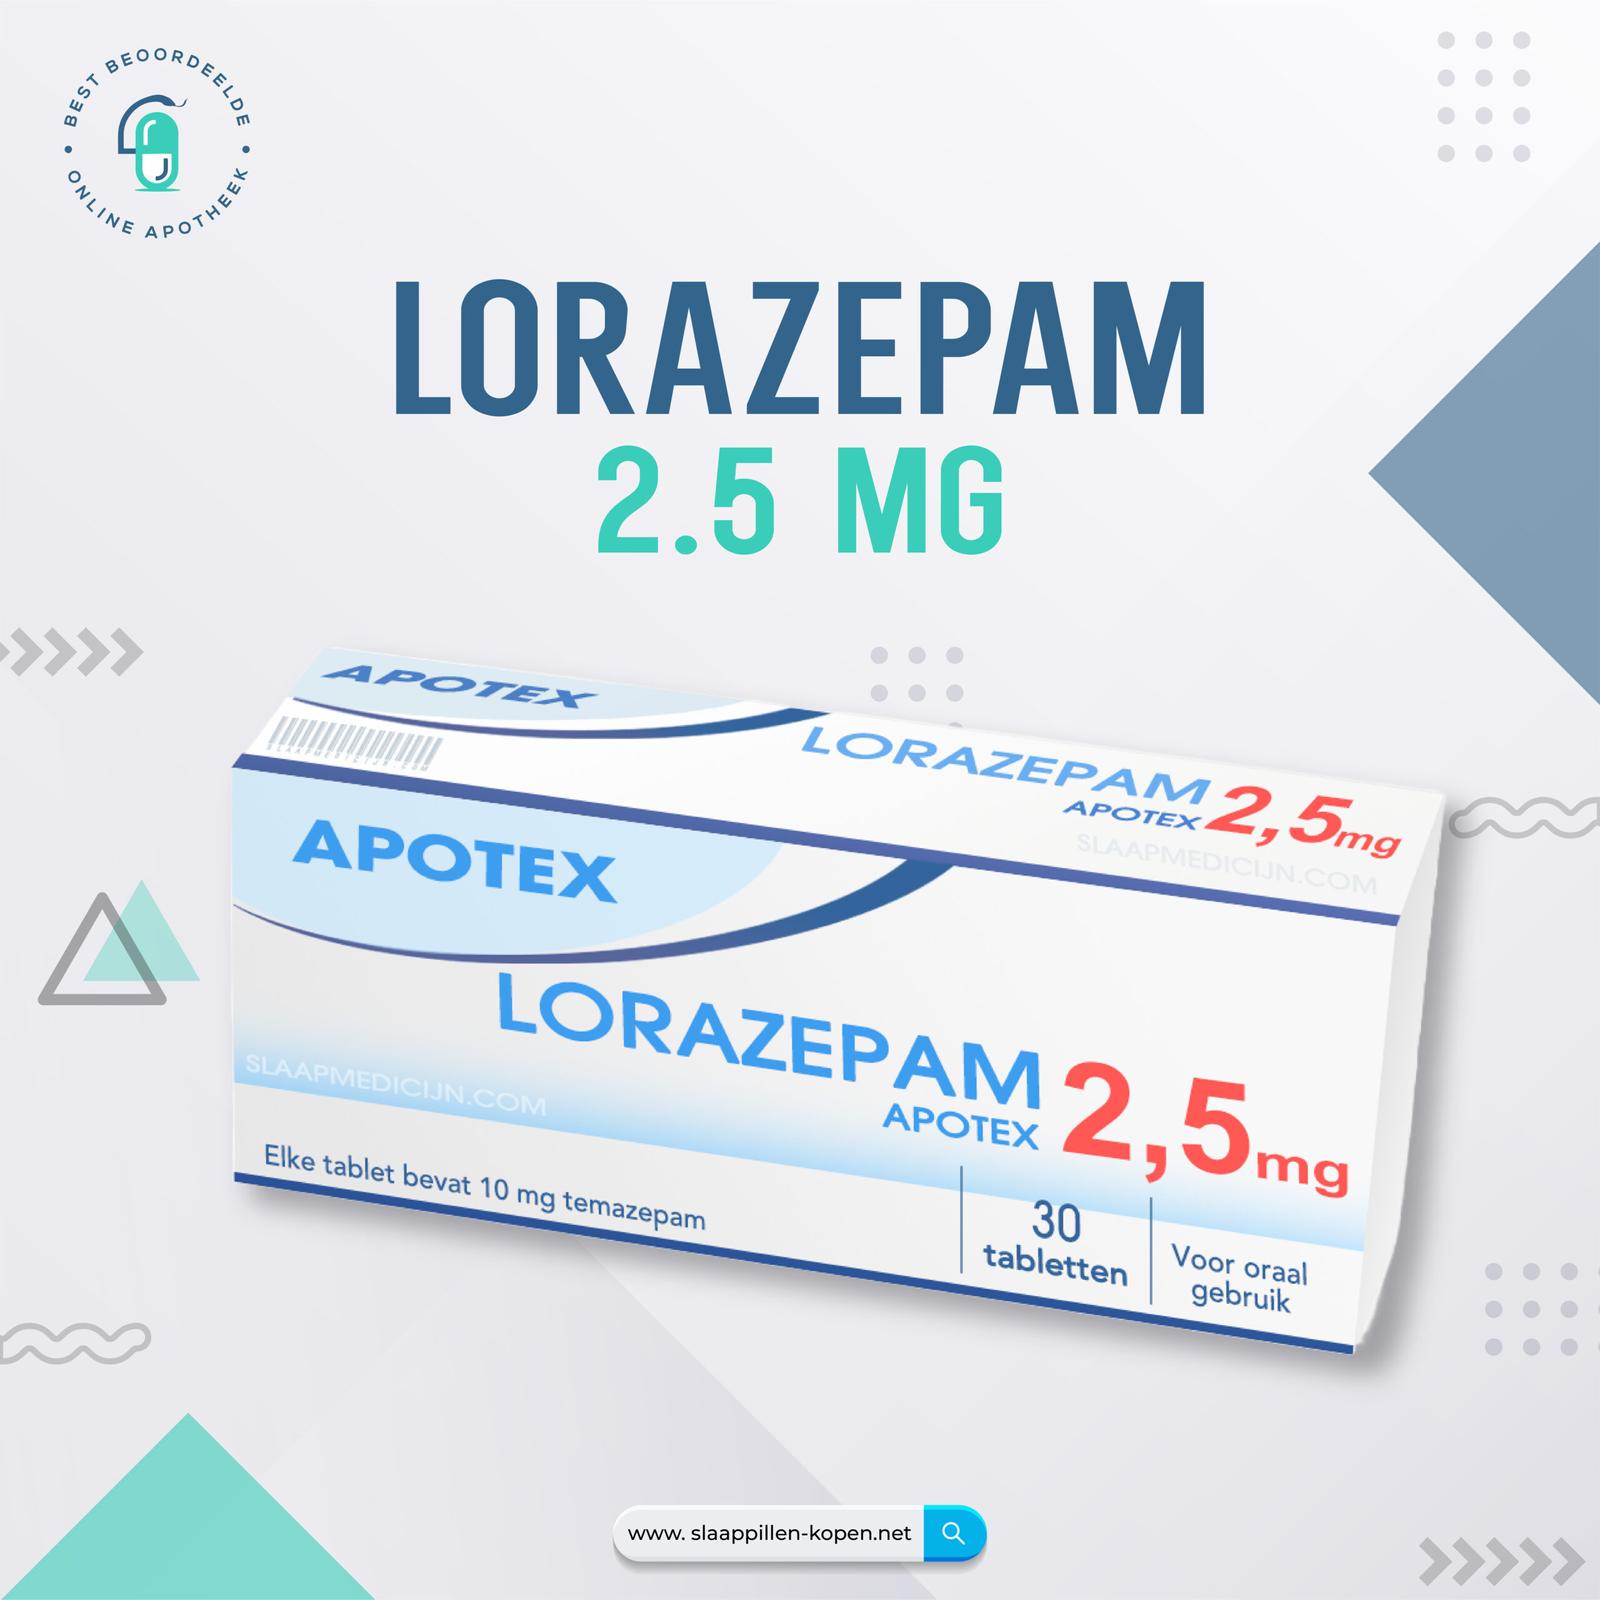 Lorazepam 2.5 mg kopen